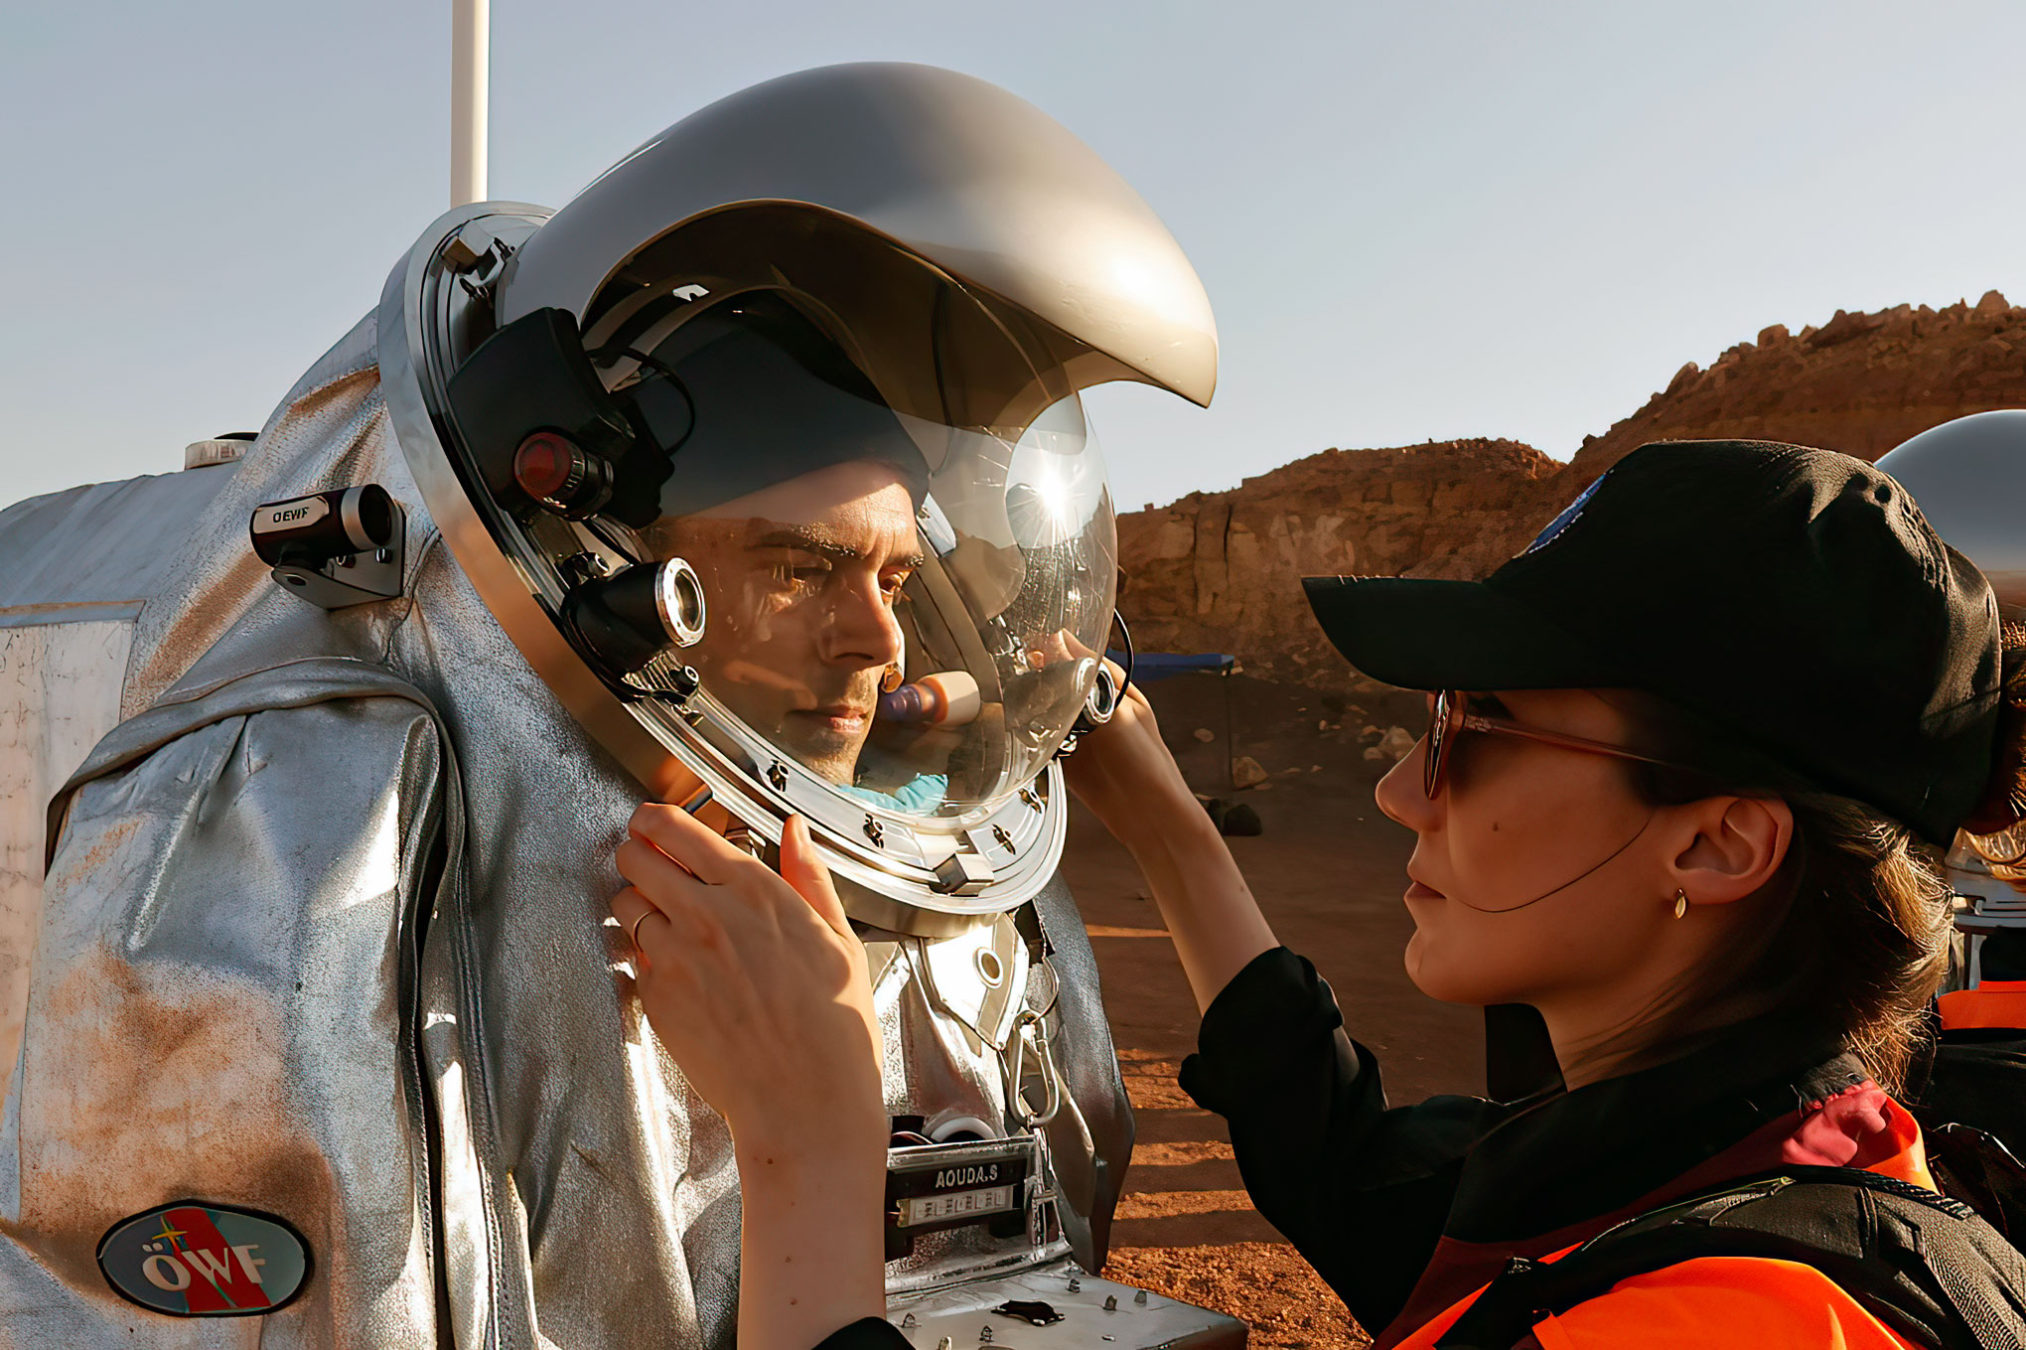 Seis "astronautas" en una misión de un mes en el desierto israelí para prepararse para Marte